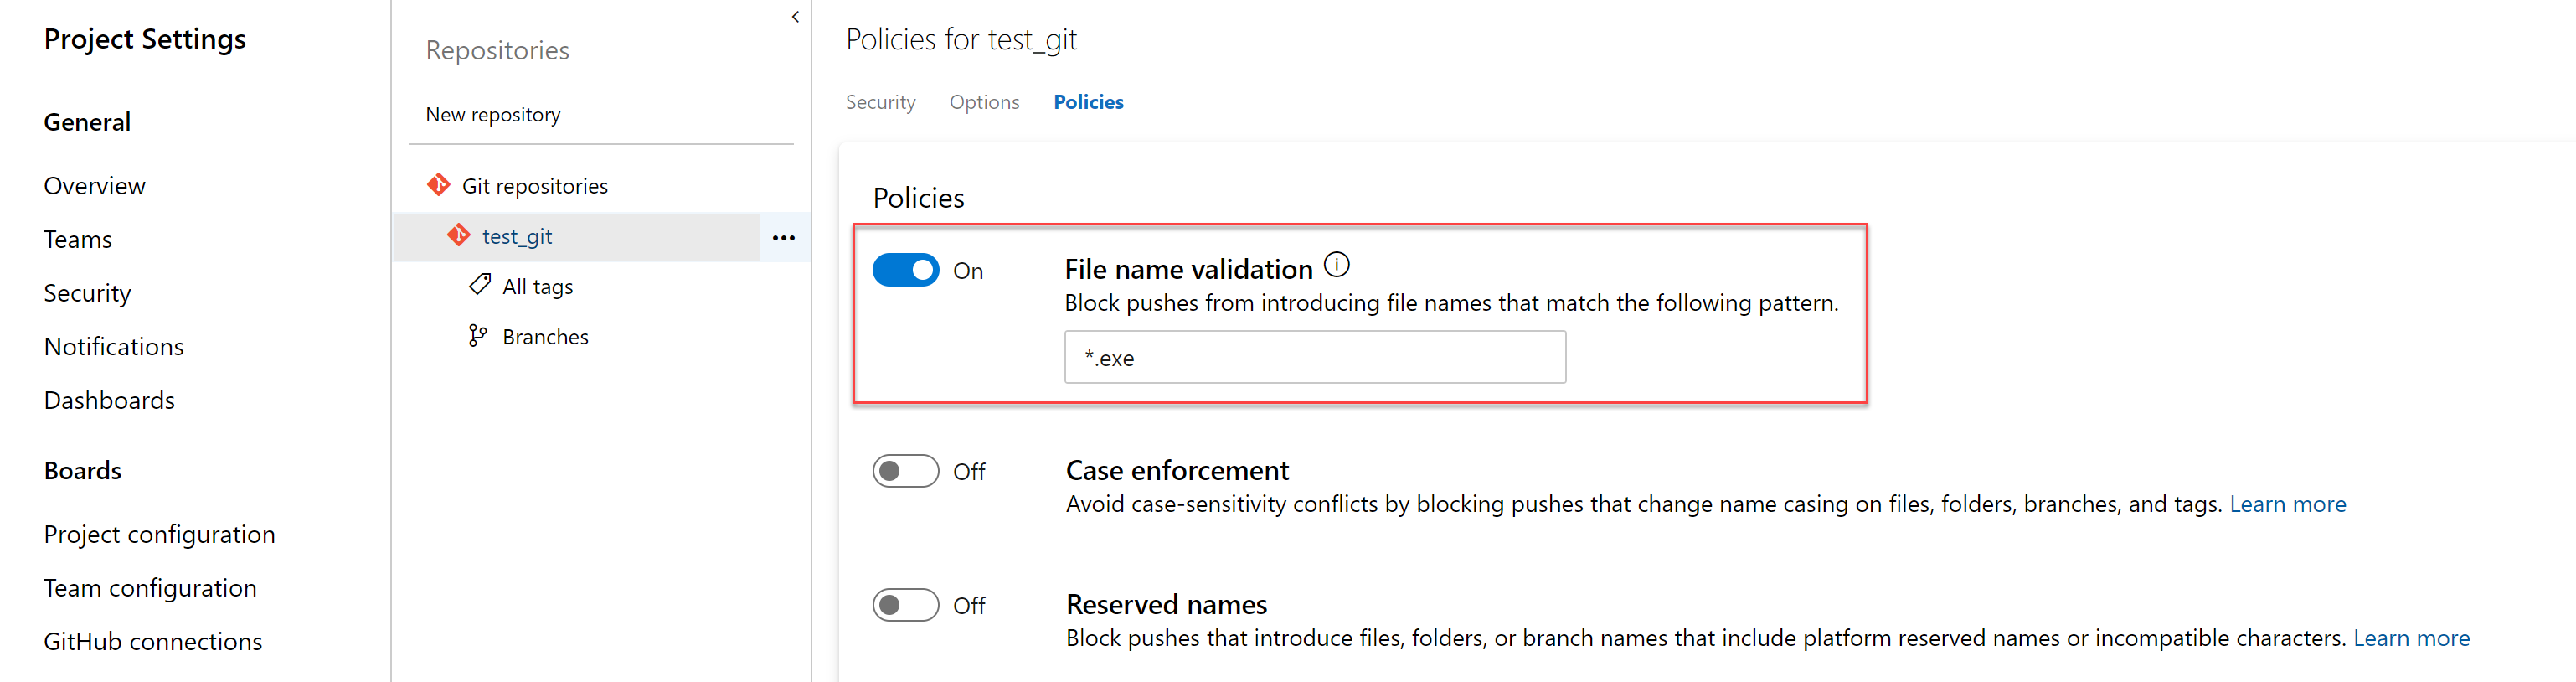 指定したパターンを持つファイルをブロックするポリシー。